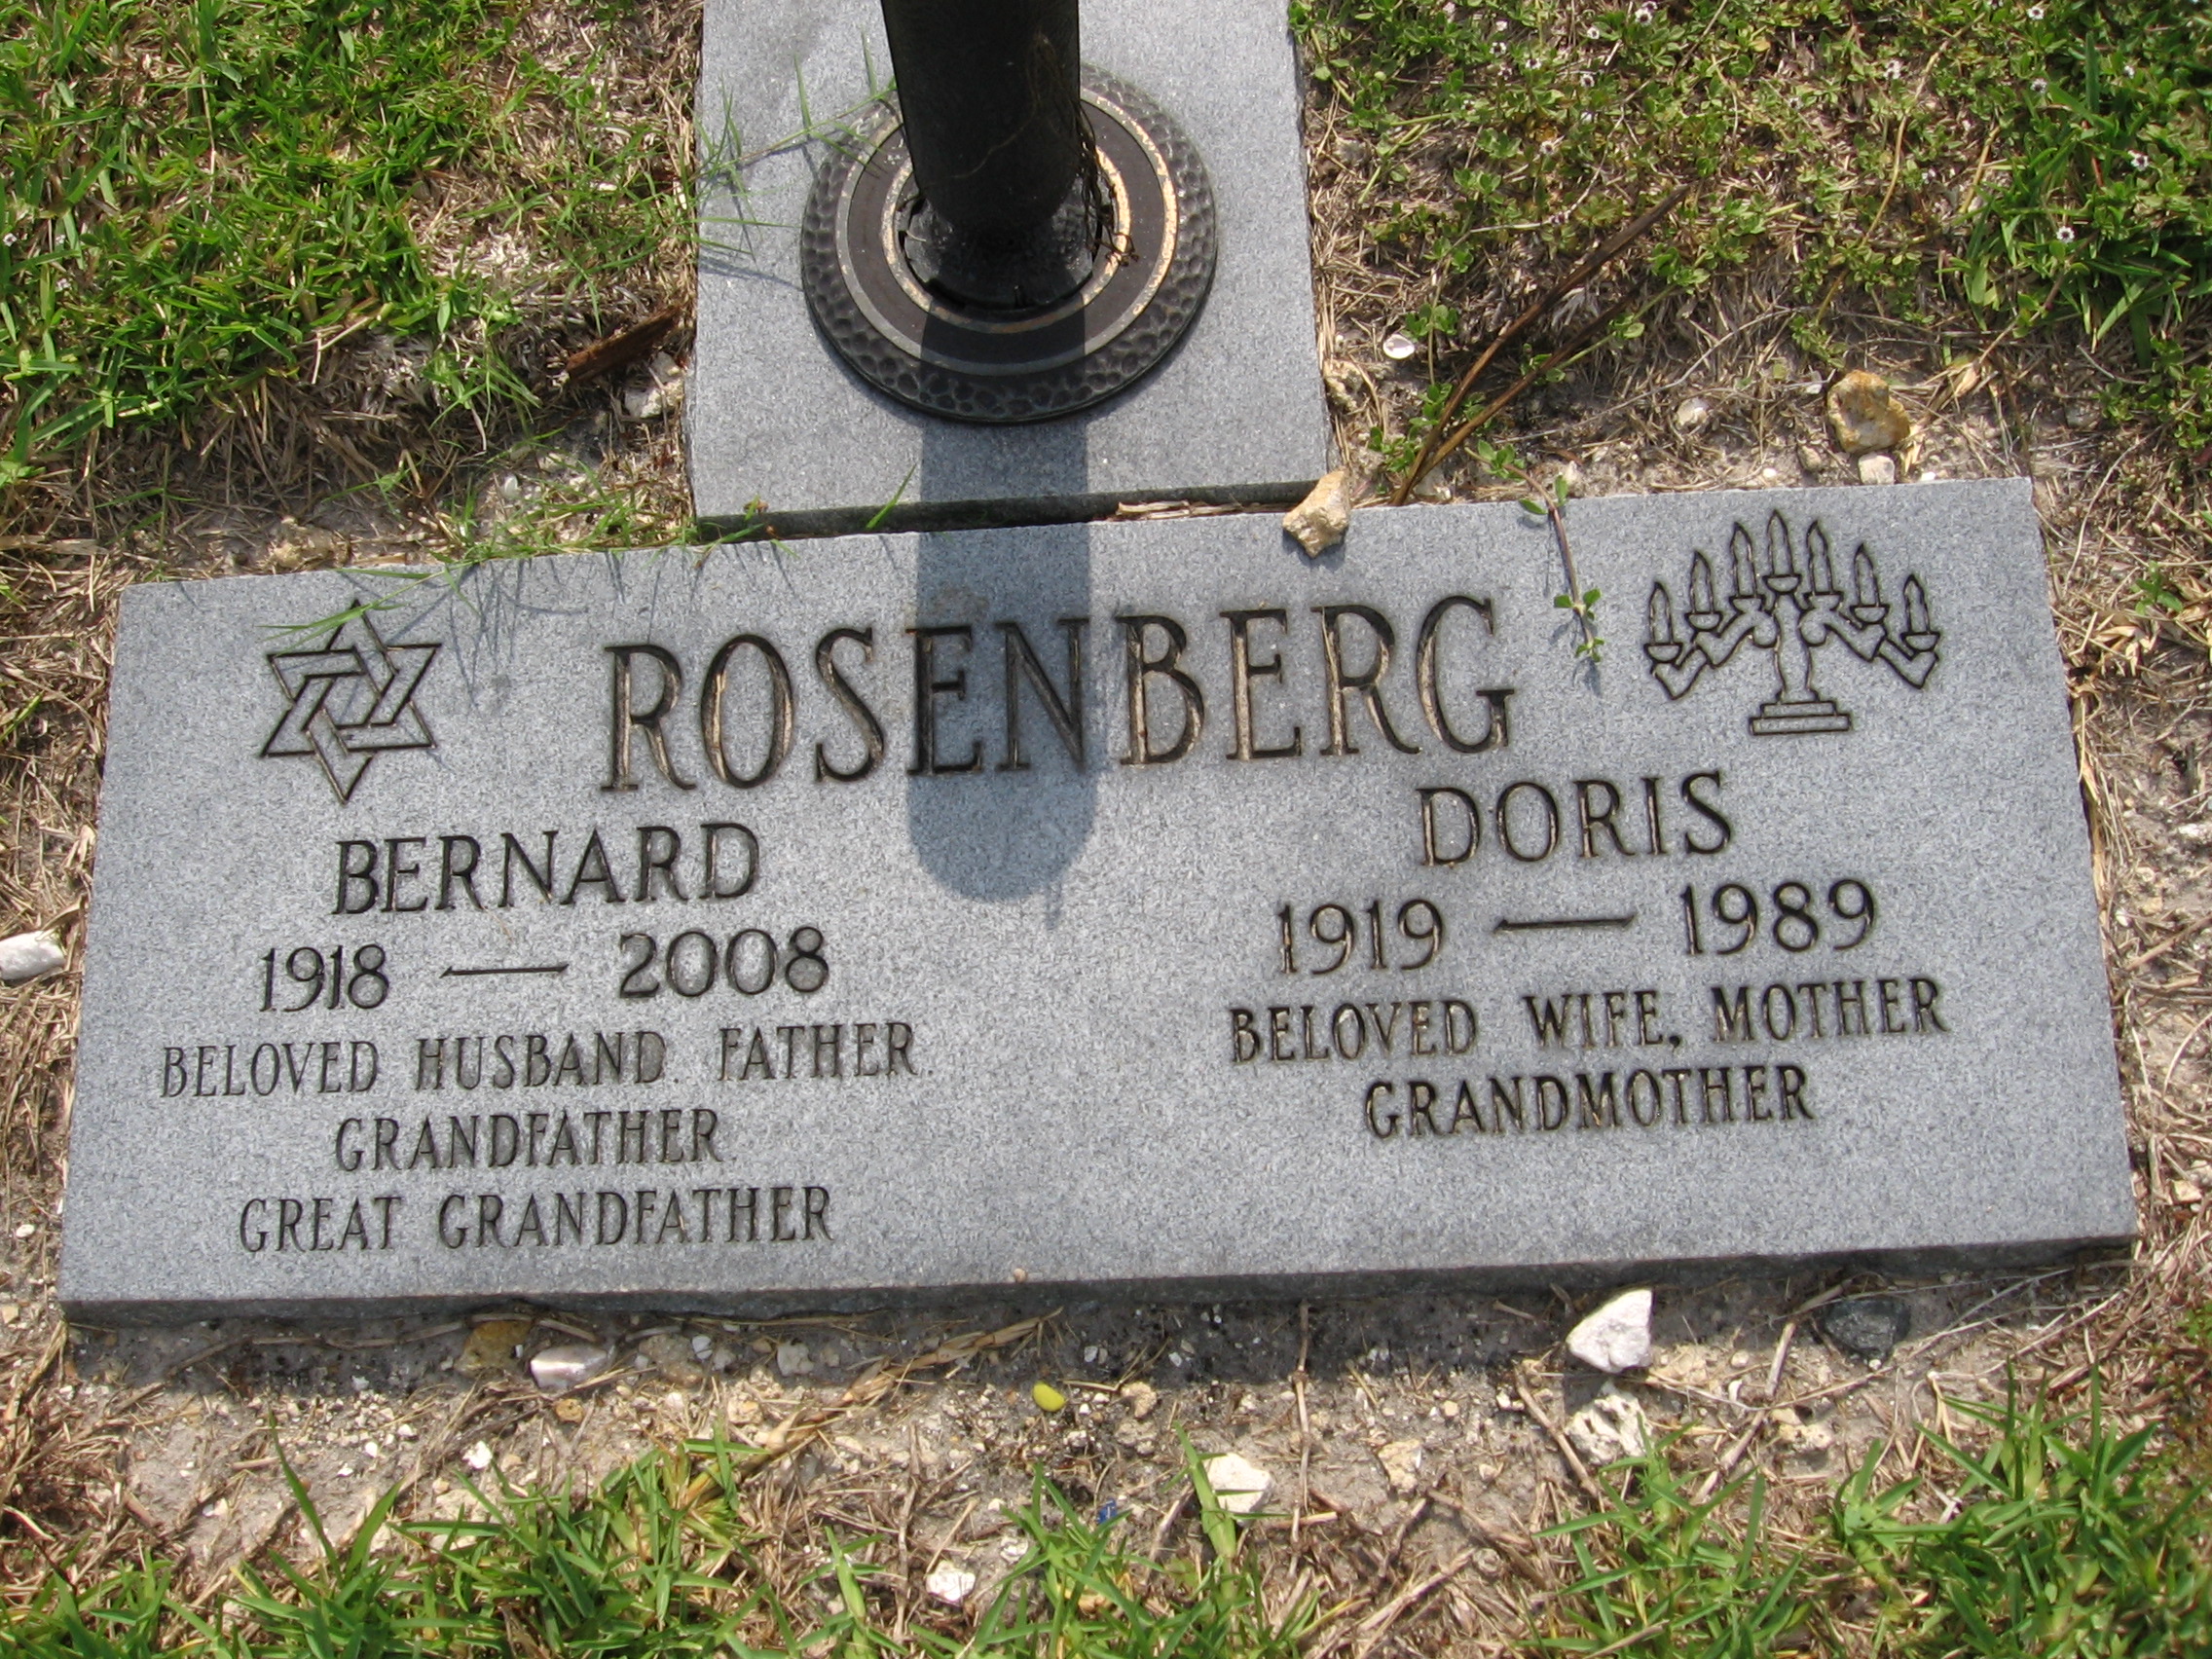 Doris Rosenberg